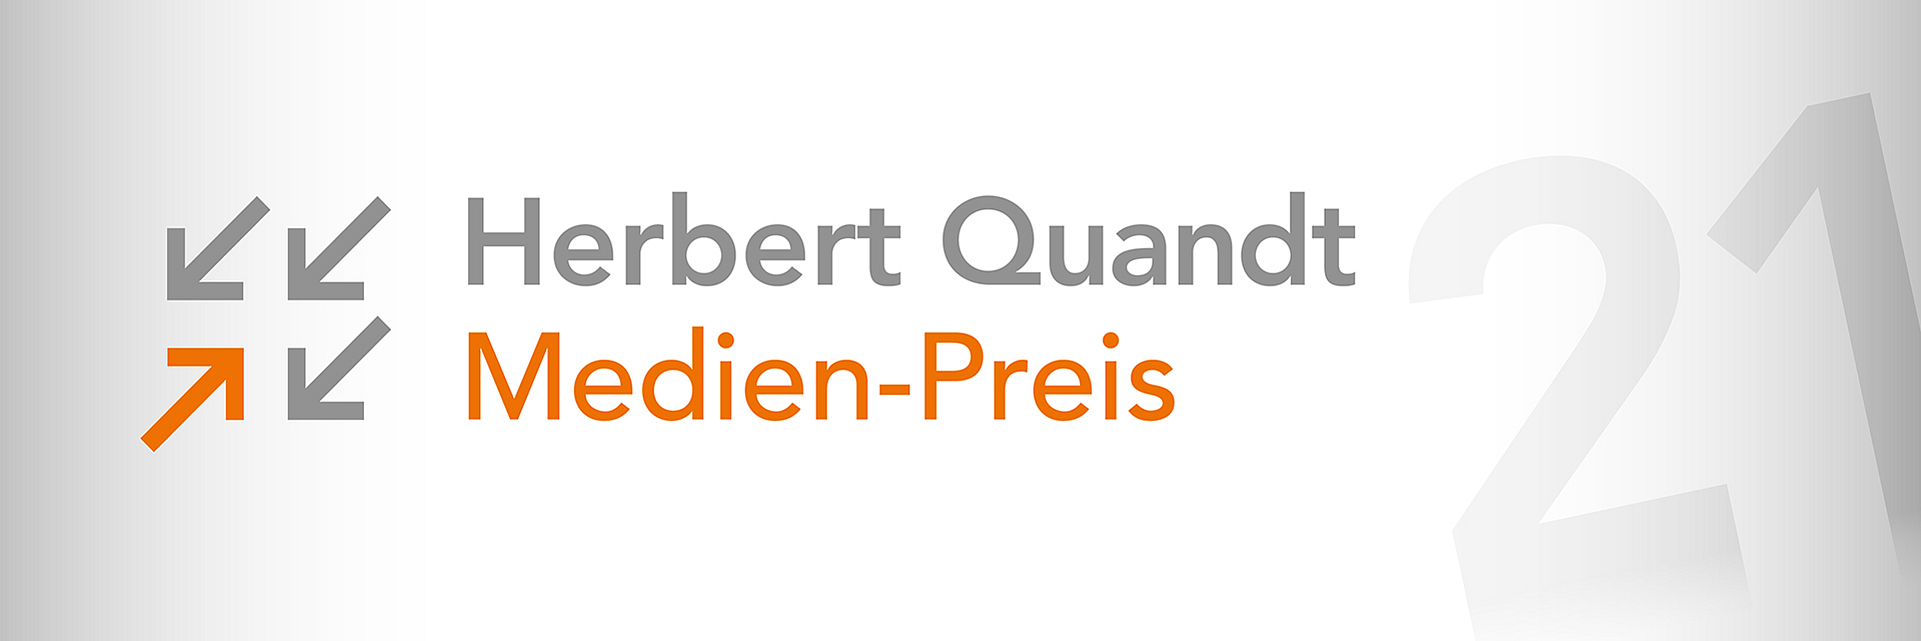 Herbert Quandt Medien-Preis 2021